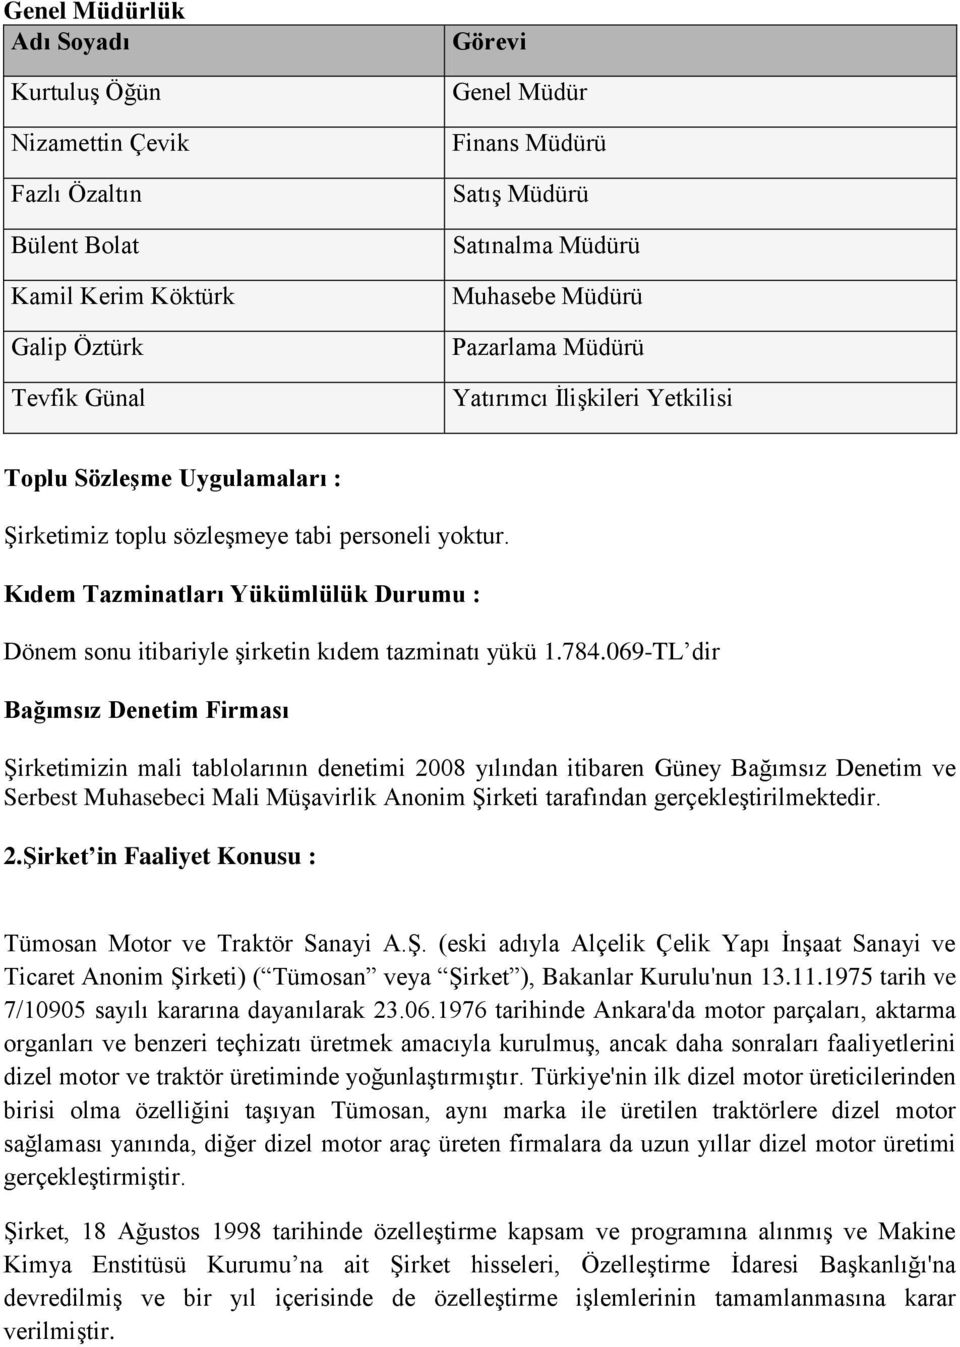 Kıdem Tazminatları Yükümlülük Durumu : Dönem sonu itibariyle şirketin kıdem tazminatı yükü 1.784.